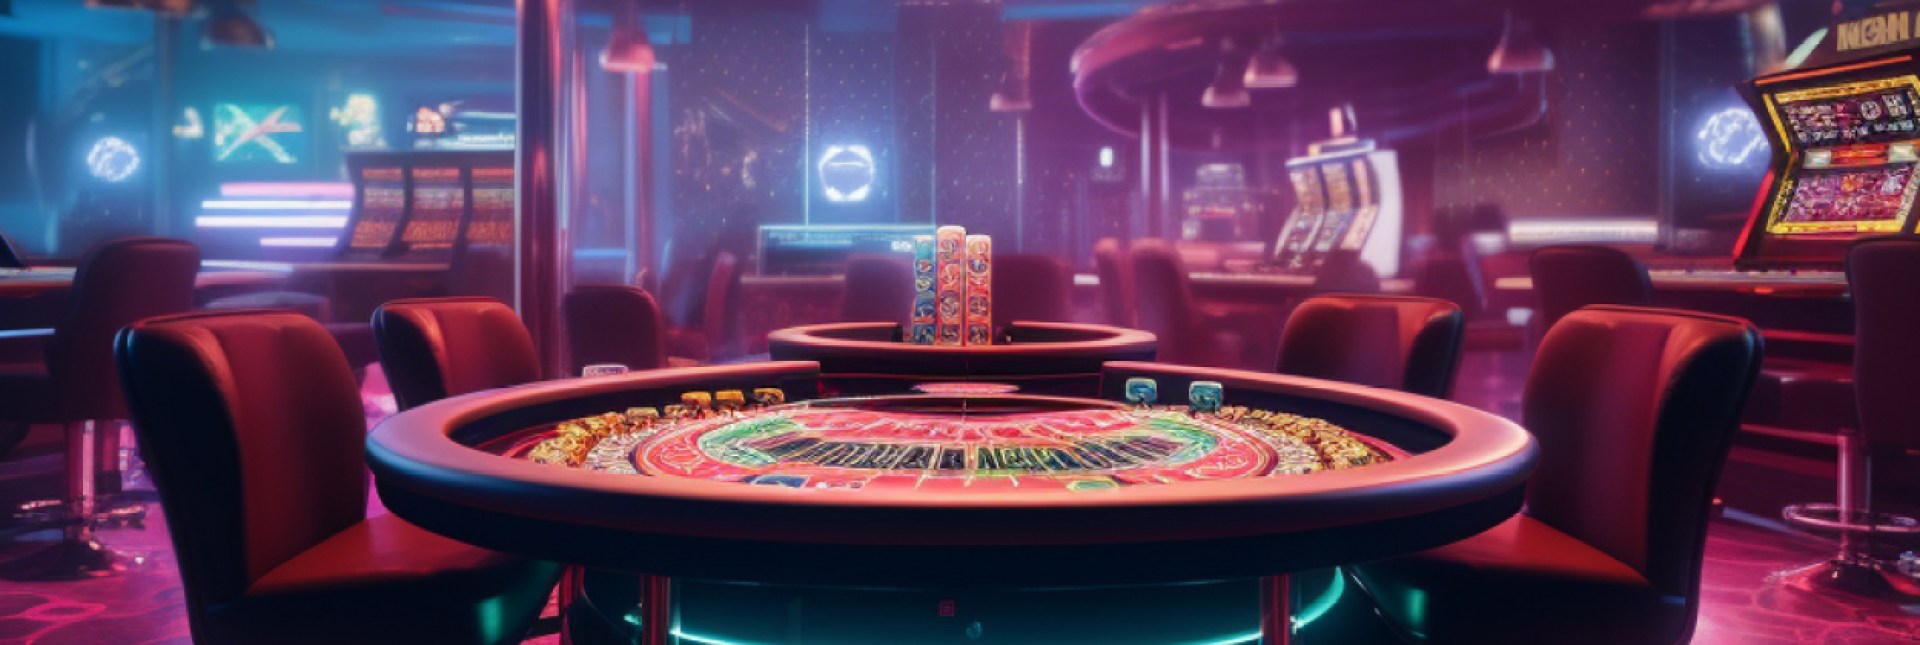 Crypto casino live dealer games